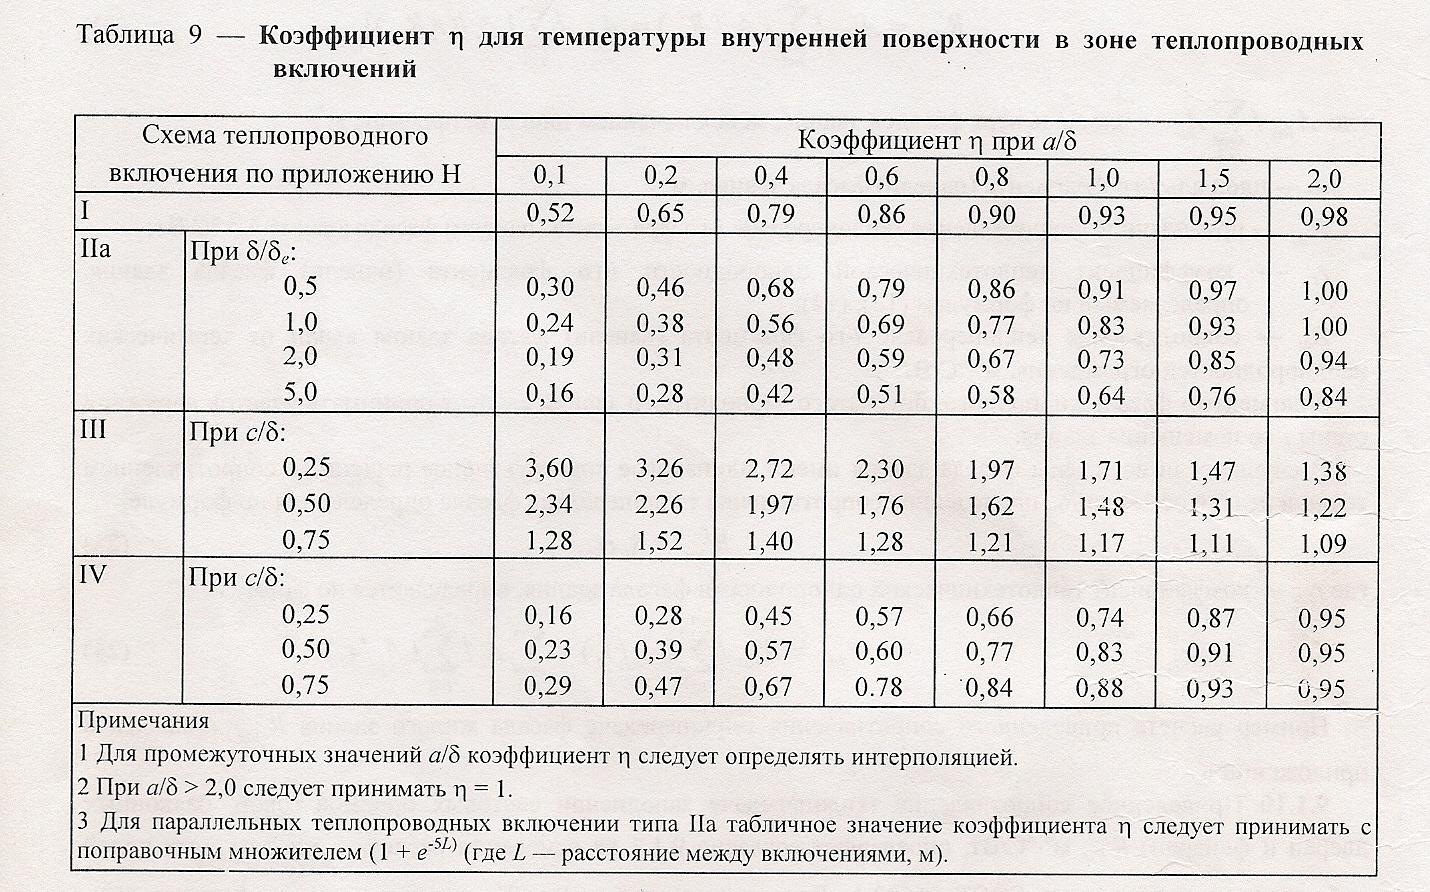 Температура наружного воздуха москва. Средняя температура отопительного периода СНИП таблица. Теплопроводные включения. Расчетная температура наружного воздуха для Москвы. Расчётная температура наружного воздуха за отопительный период.